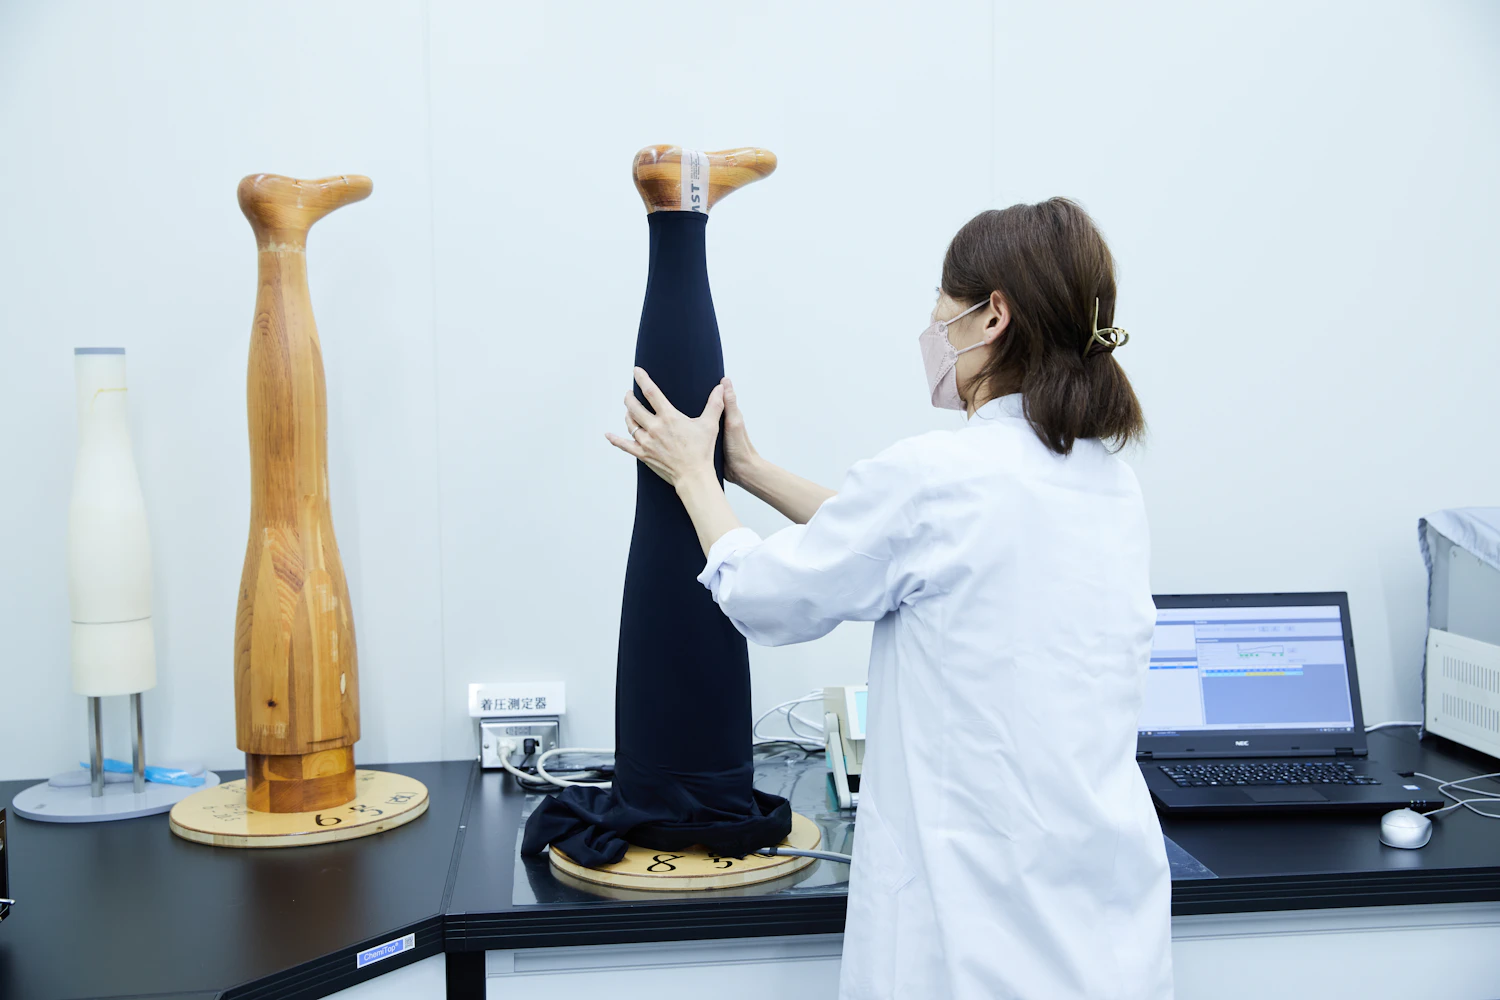 段階着圧を実現するための着圧試験機。脚型は日本人のデータをベースに作られている